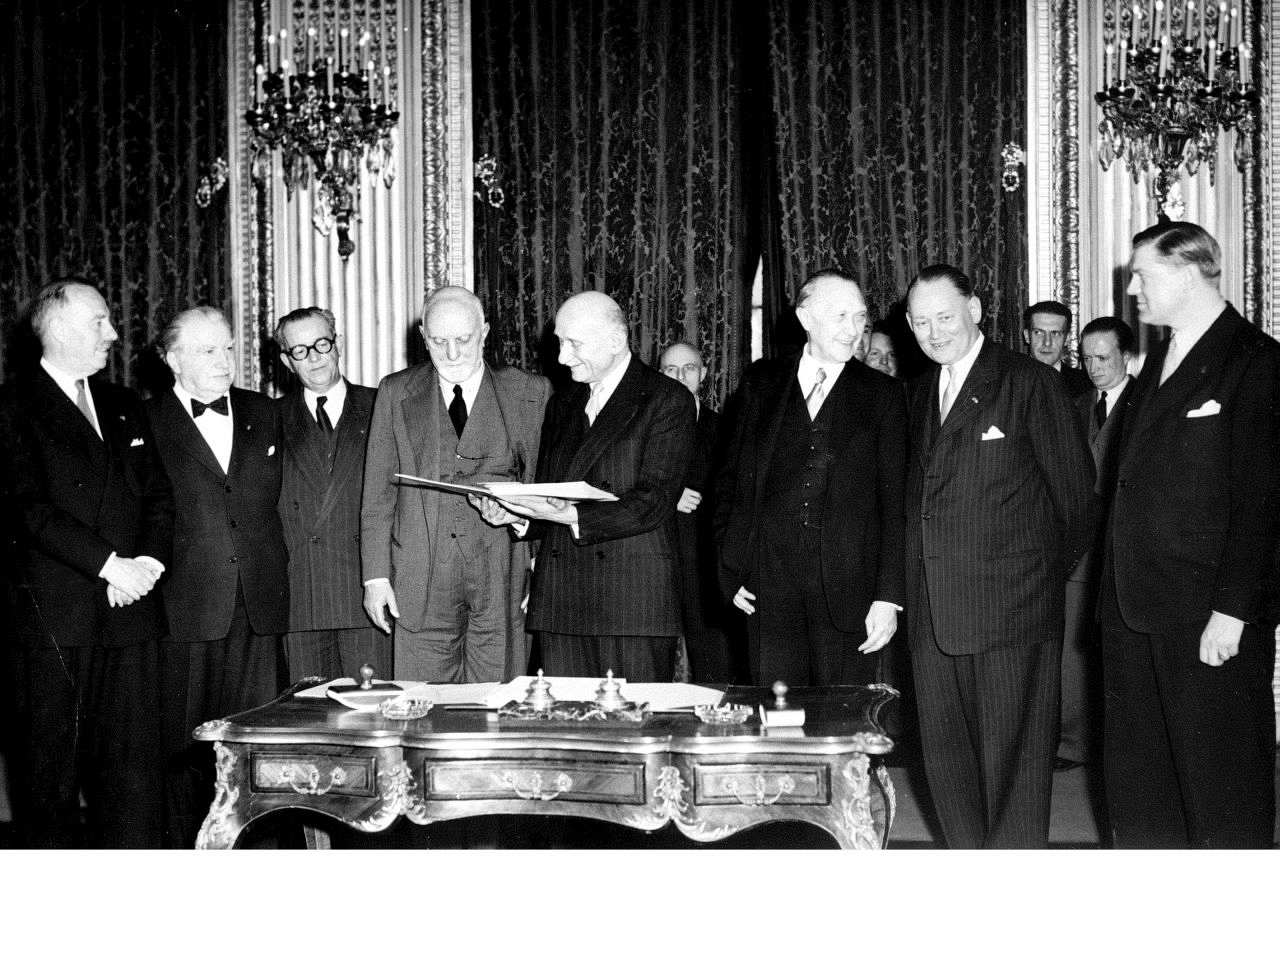 Schwarz-Weiß-Foto. Unterzeichner des EGKS-Vertrags stehen hinter einem reich-verzierten verschnörkelten Tisch. Robert Schuman hält vermutlich den Vertrag in den Händen. Carlo Sforza - neben ihm stehend - schaut hinein.